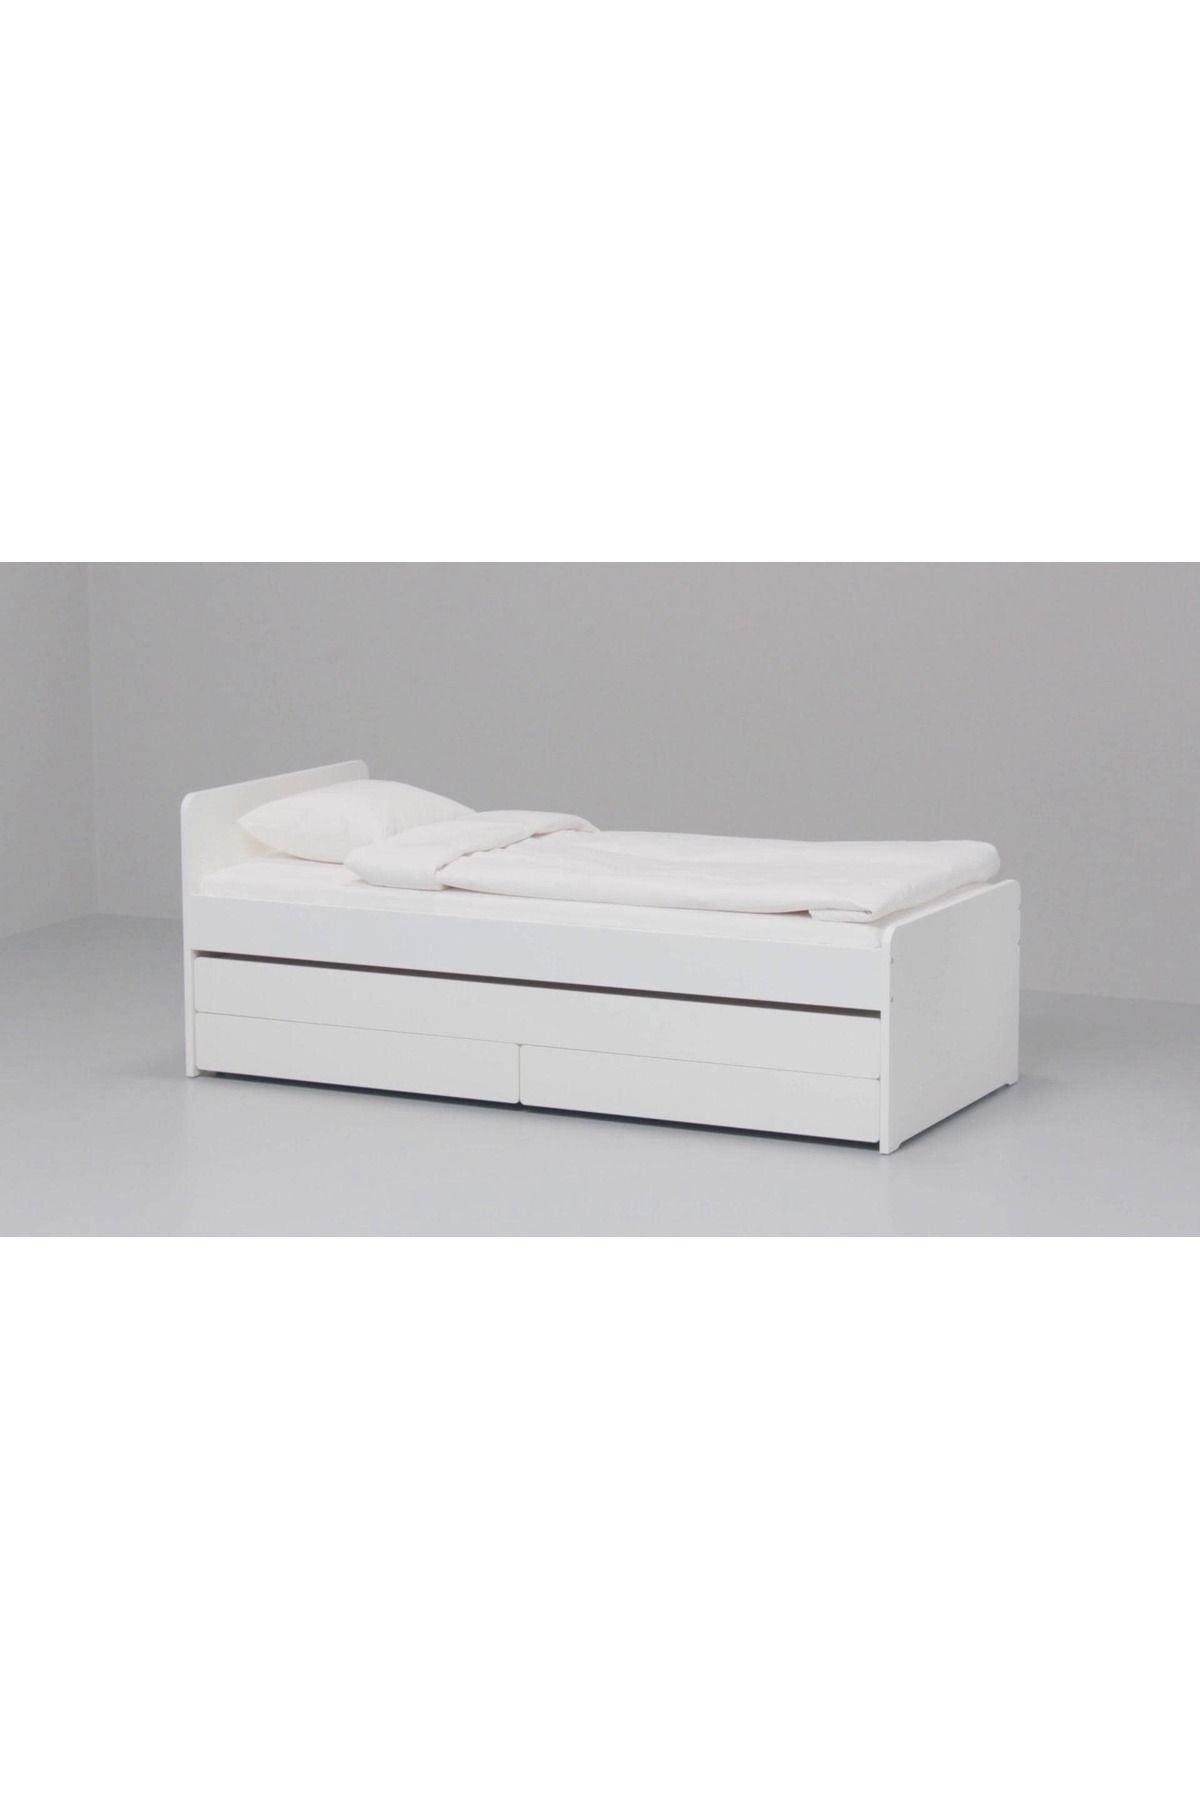 IKEA tek kişilik baza, beyaz, 90x200 cm, 2 çekmeceli, alt yataklı